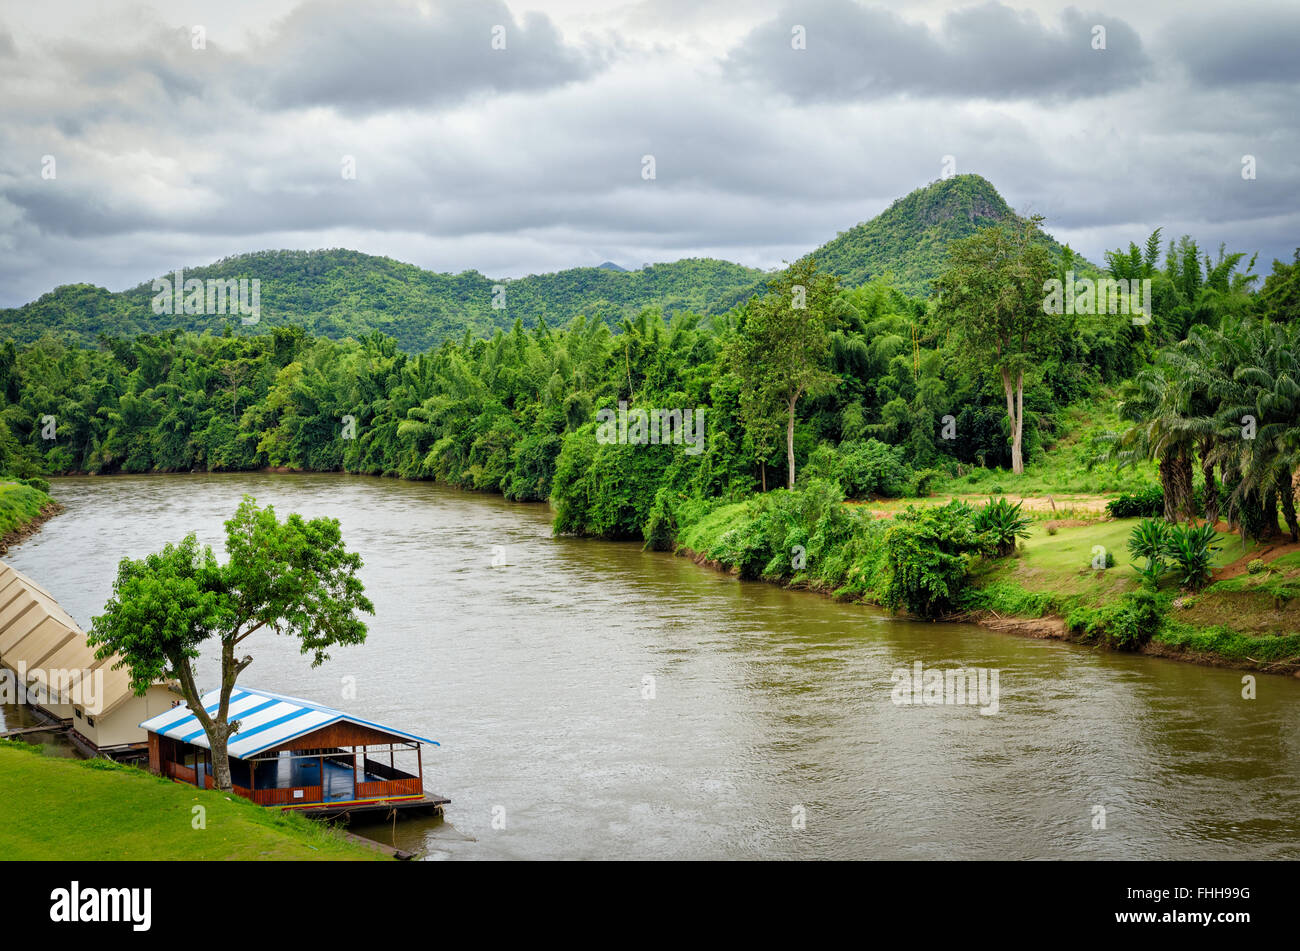 Tailandia río Kwai y paisaje típico Foto de stock